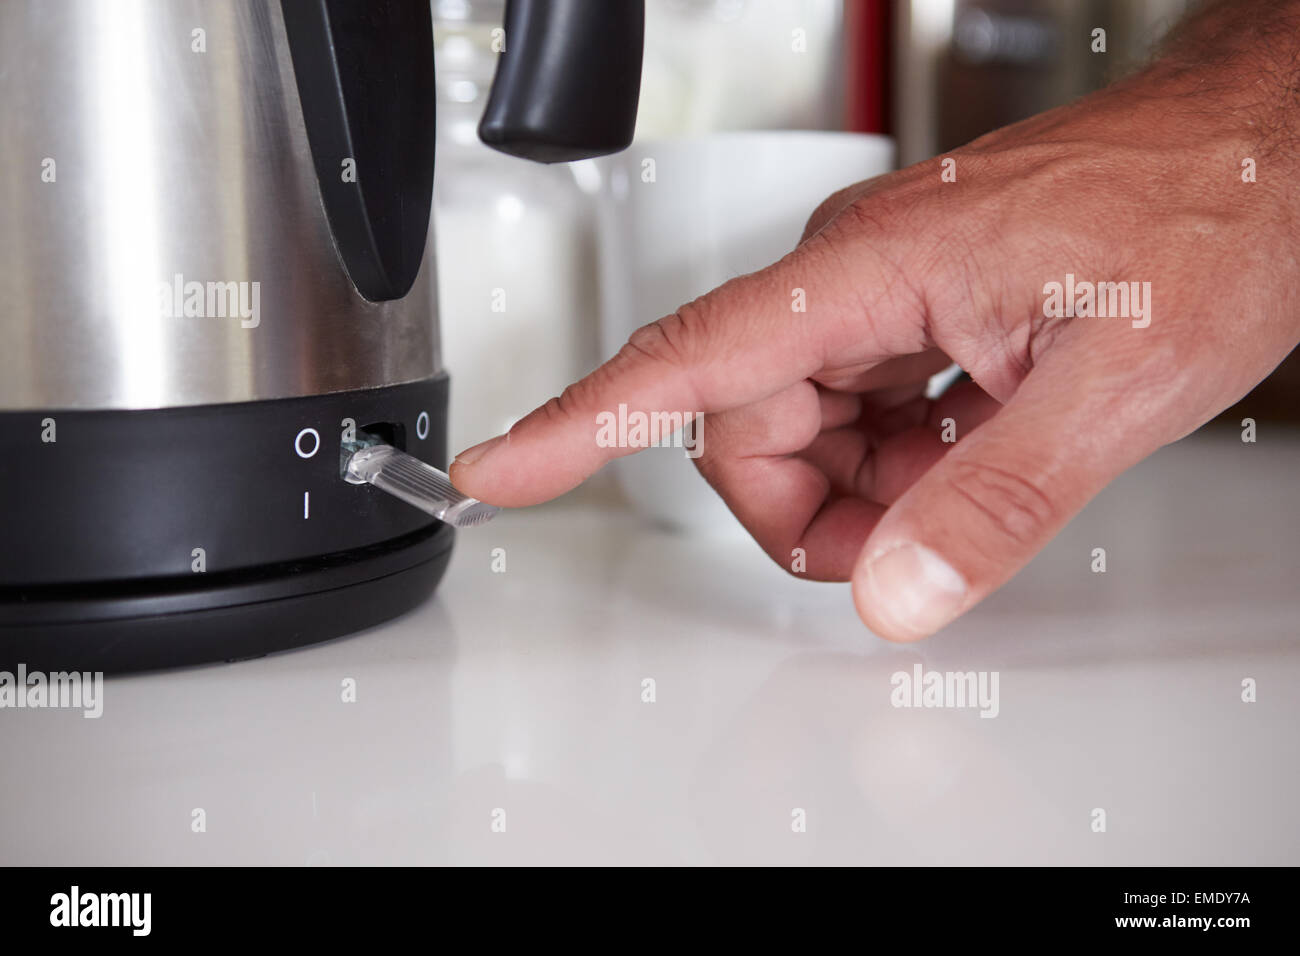 Nahaufnahme des Mannes Einschalten Schalter Wasserkocher aufkochen  Stockfotografie - Alamy